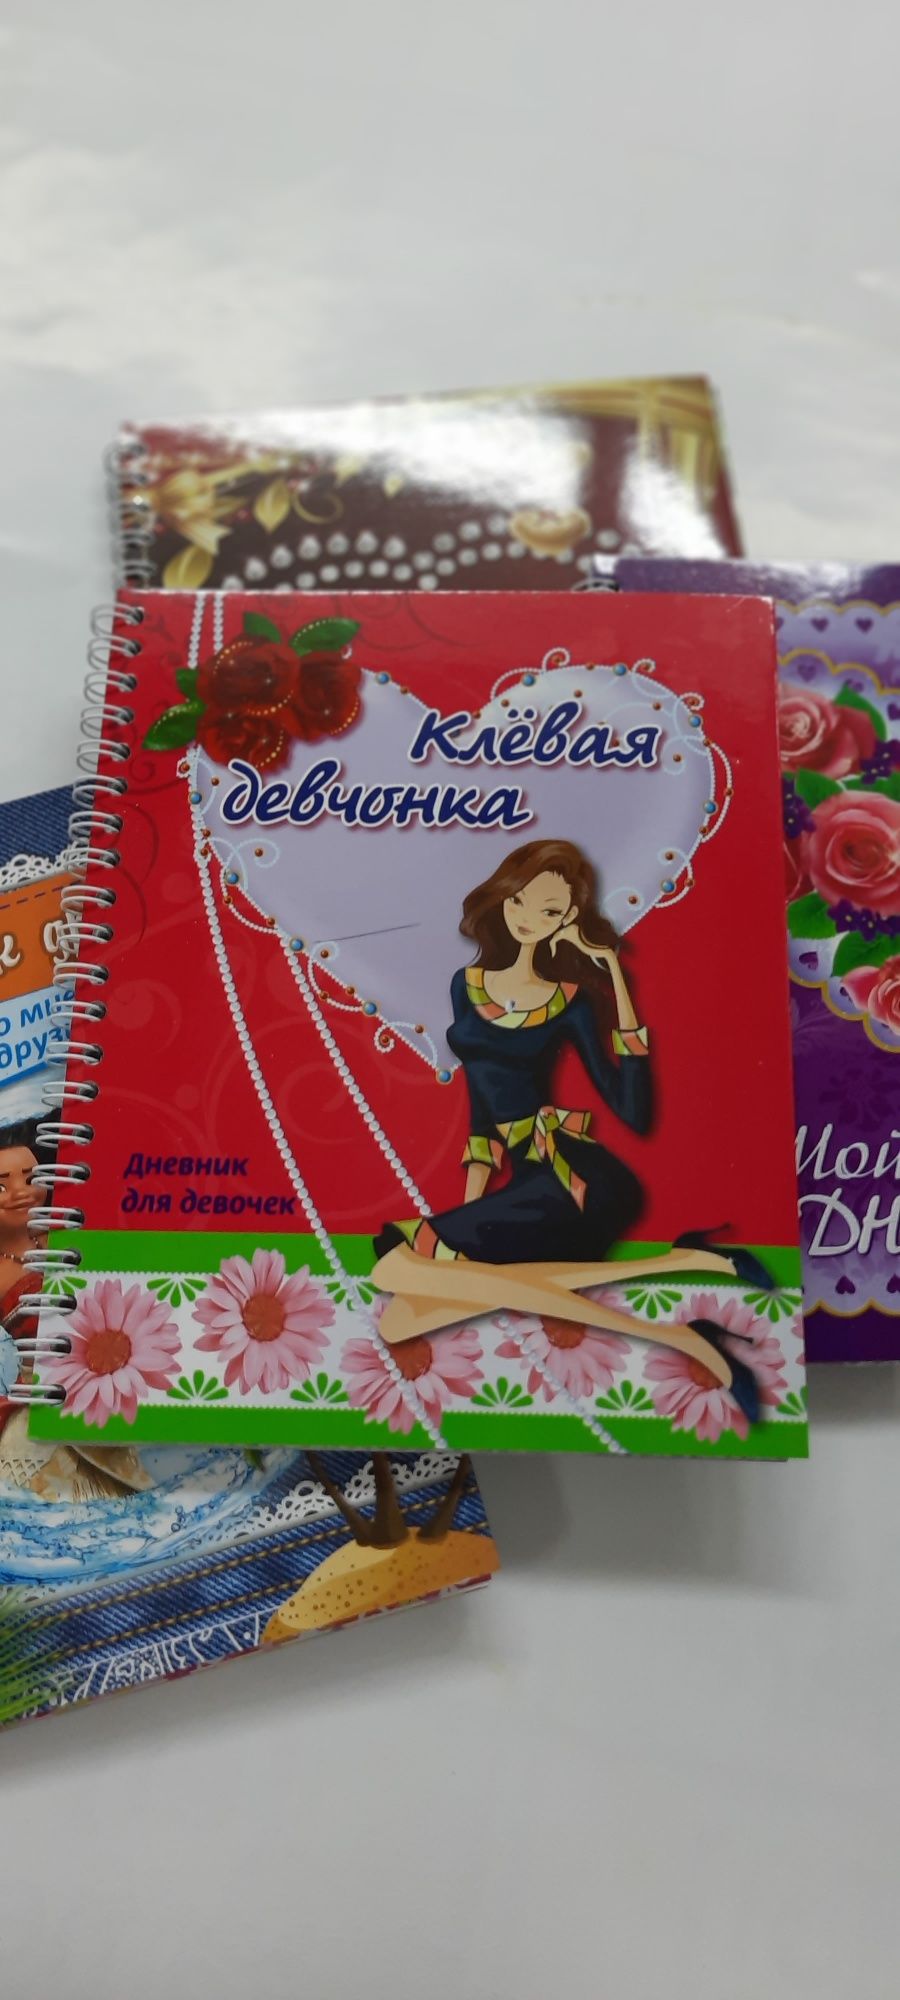 Дневник для девочек и мальчиков